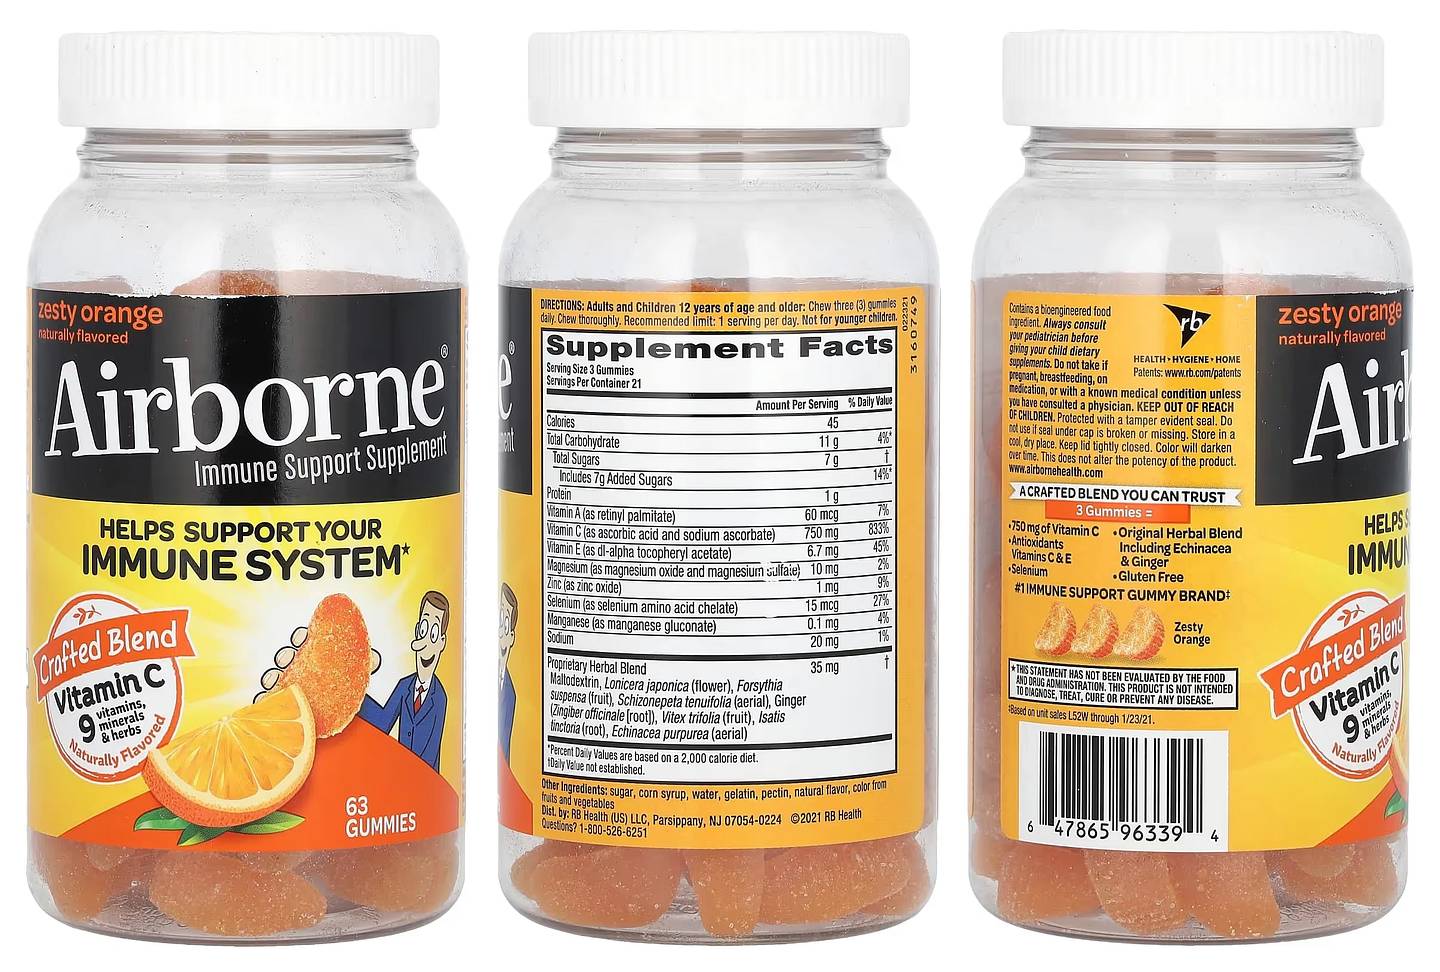 AirBorne, Immune Support Supplement Gummies packaging